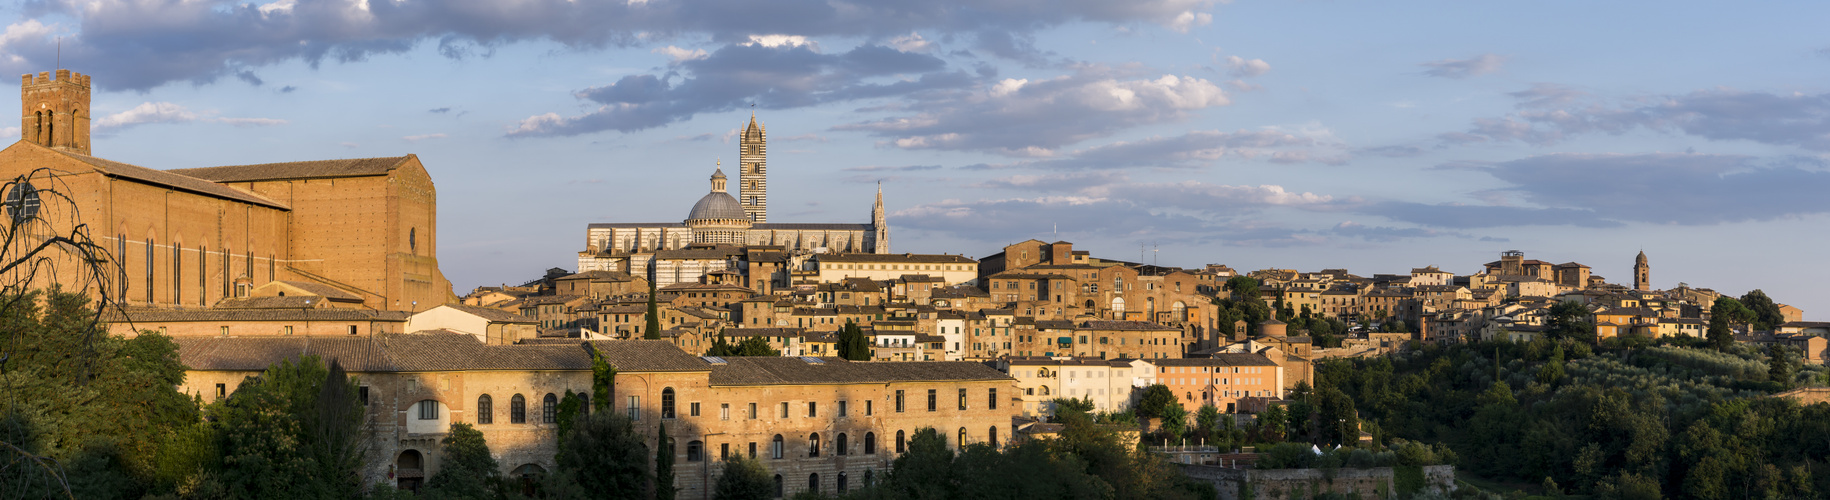 Siena Panorama mit Cattedrale di Santa Maria Assunta 